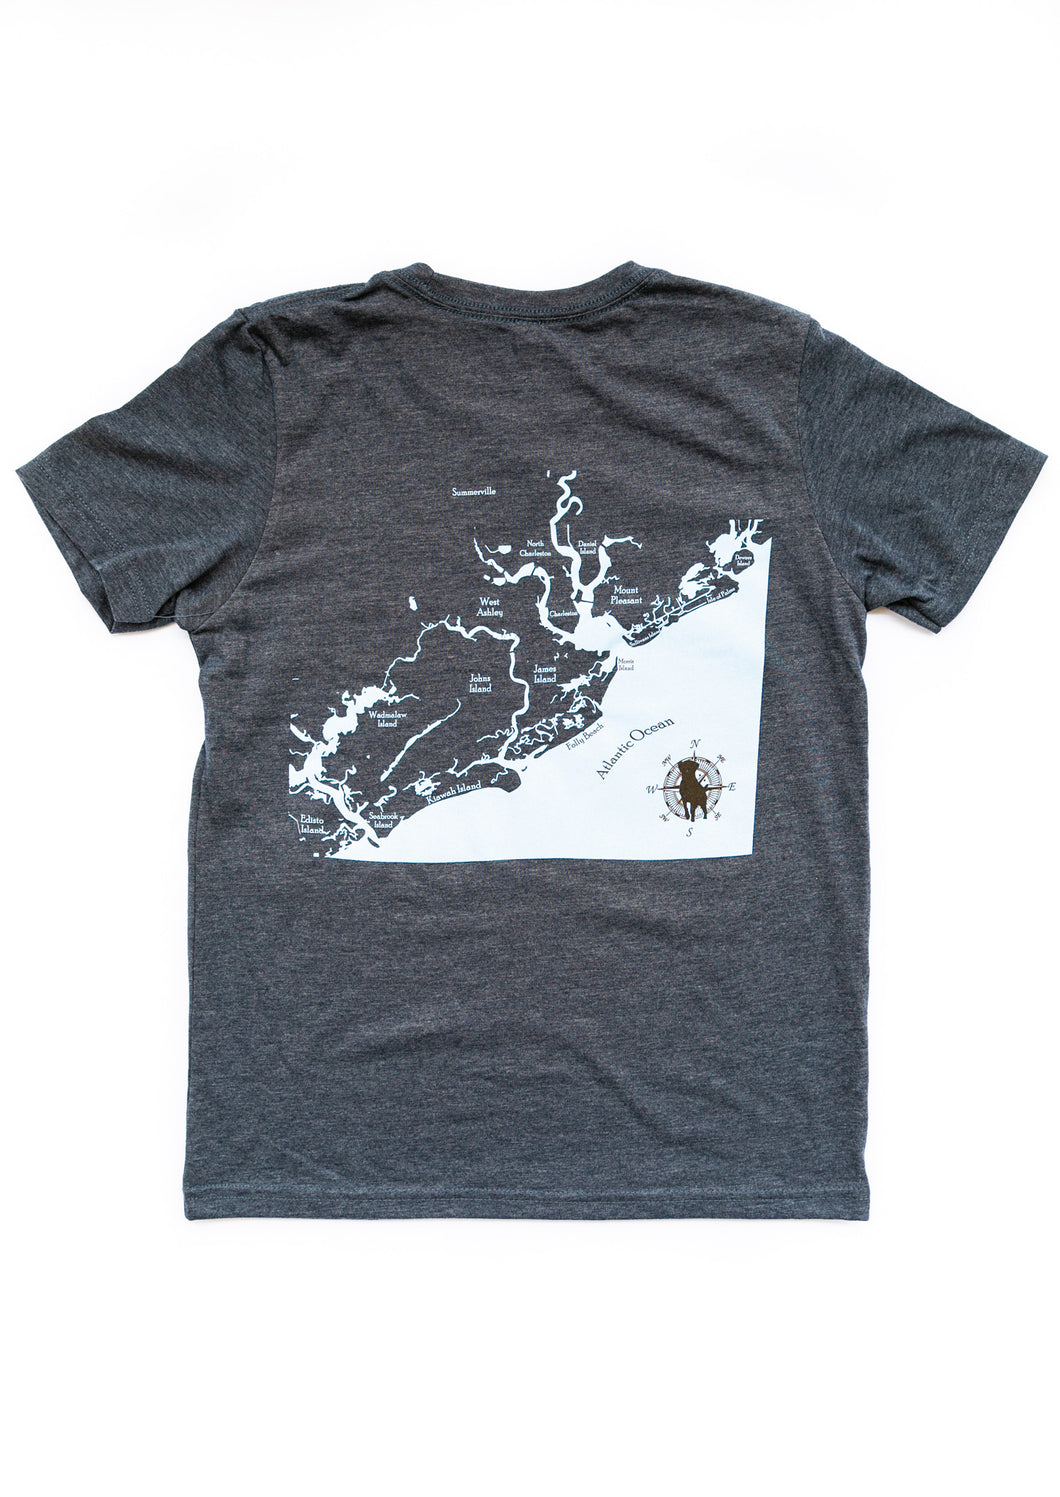 Charleston Waterways Short Sleeve Youth T-shirt